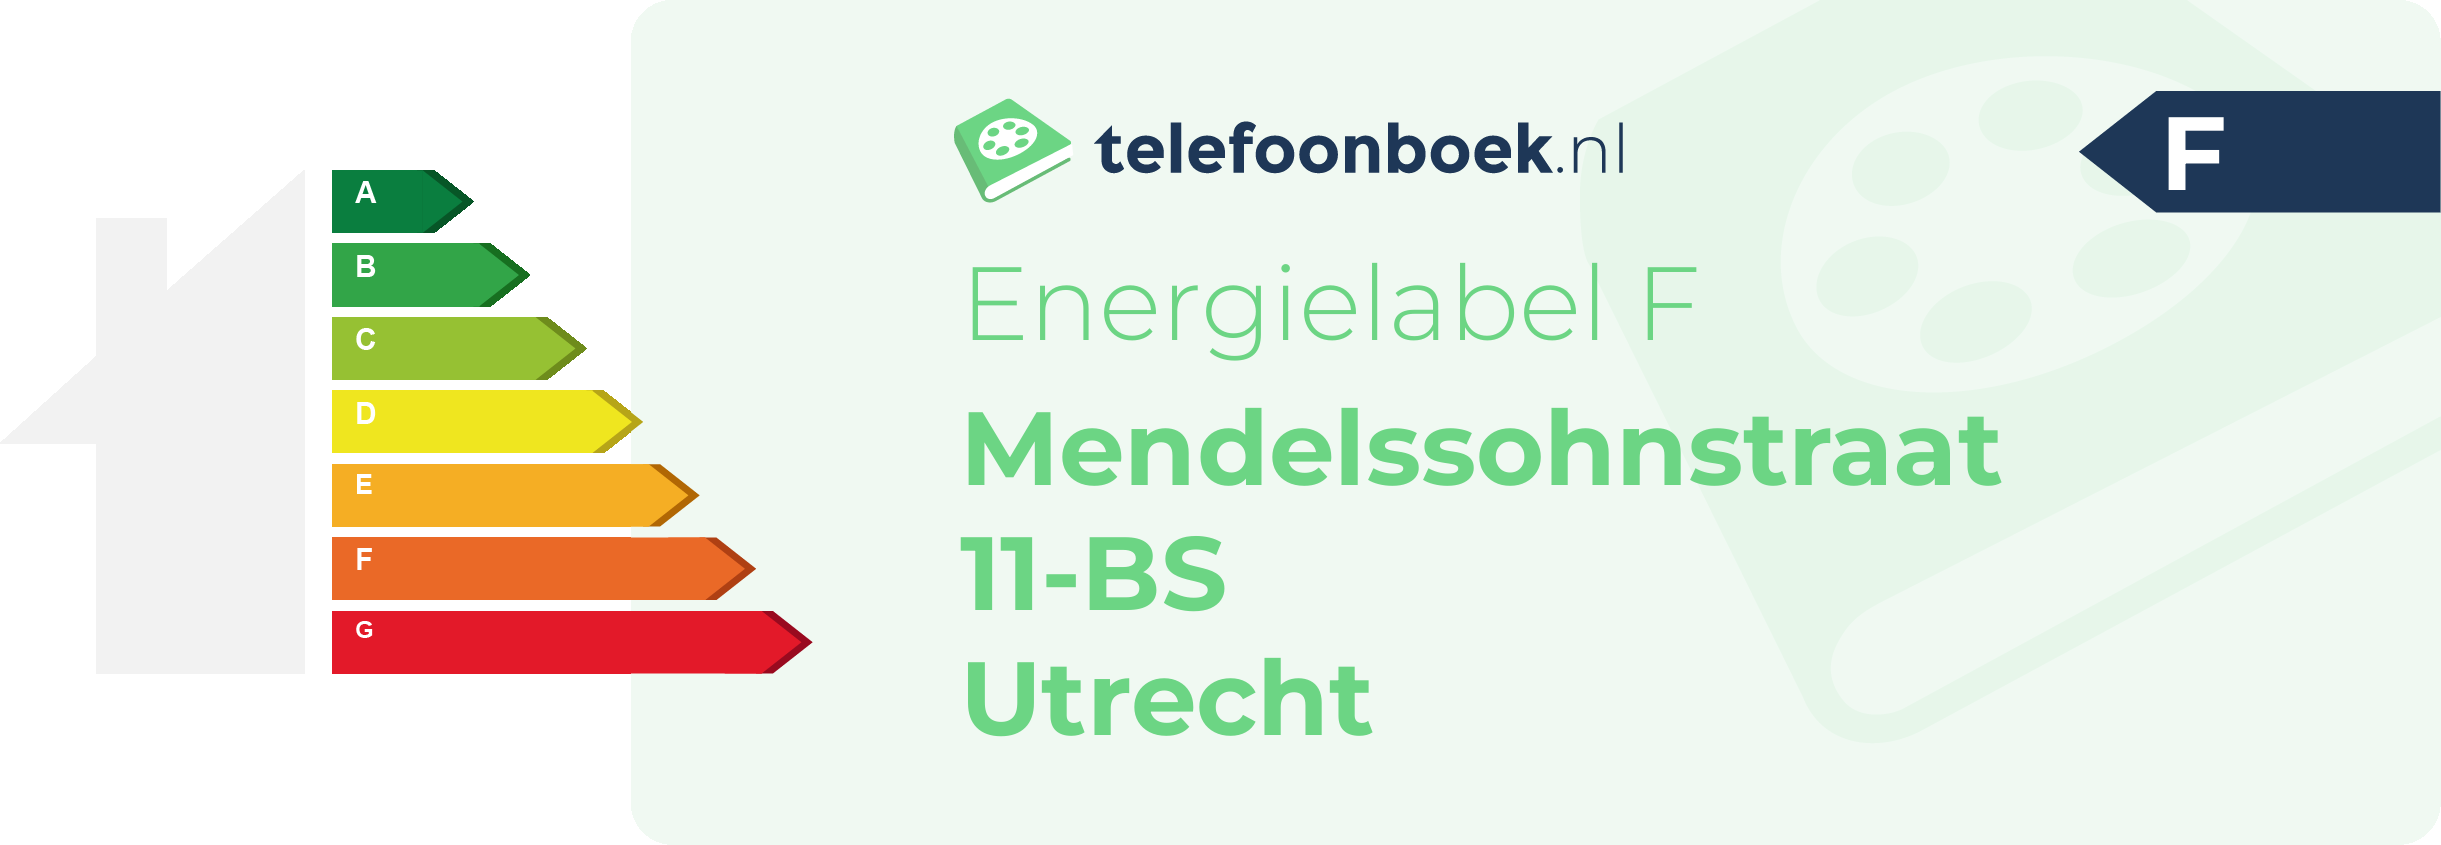 Energielabel Mendelssohnstraat 11-BS Utrecht